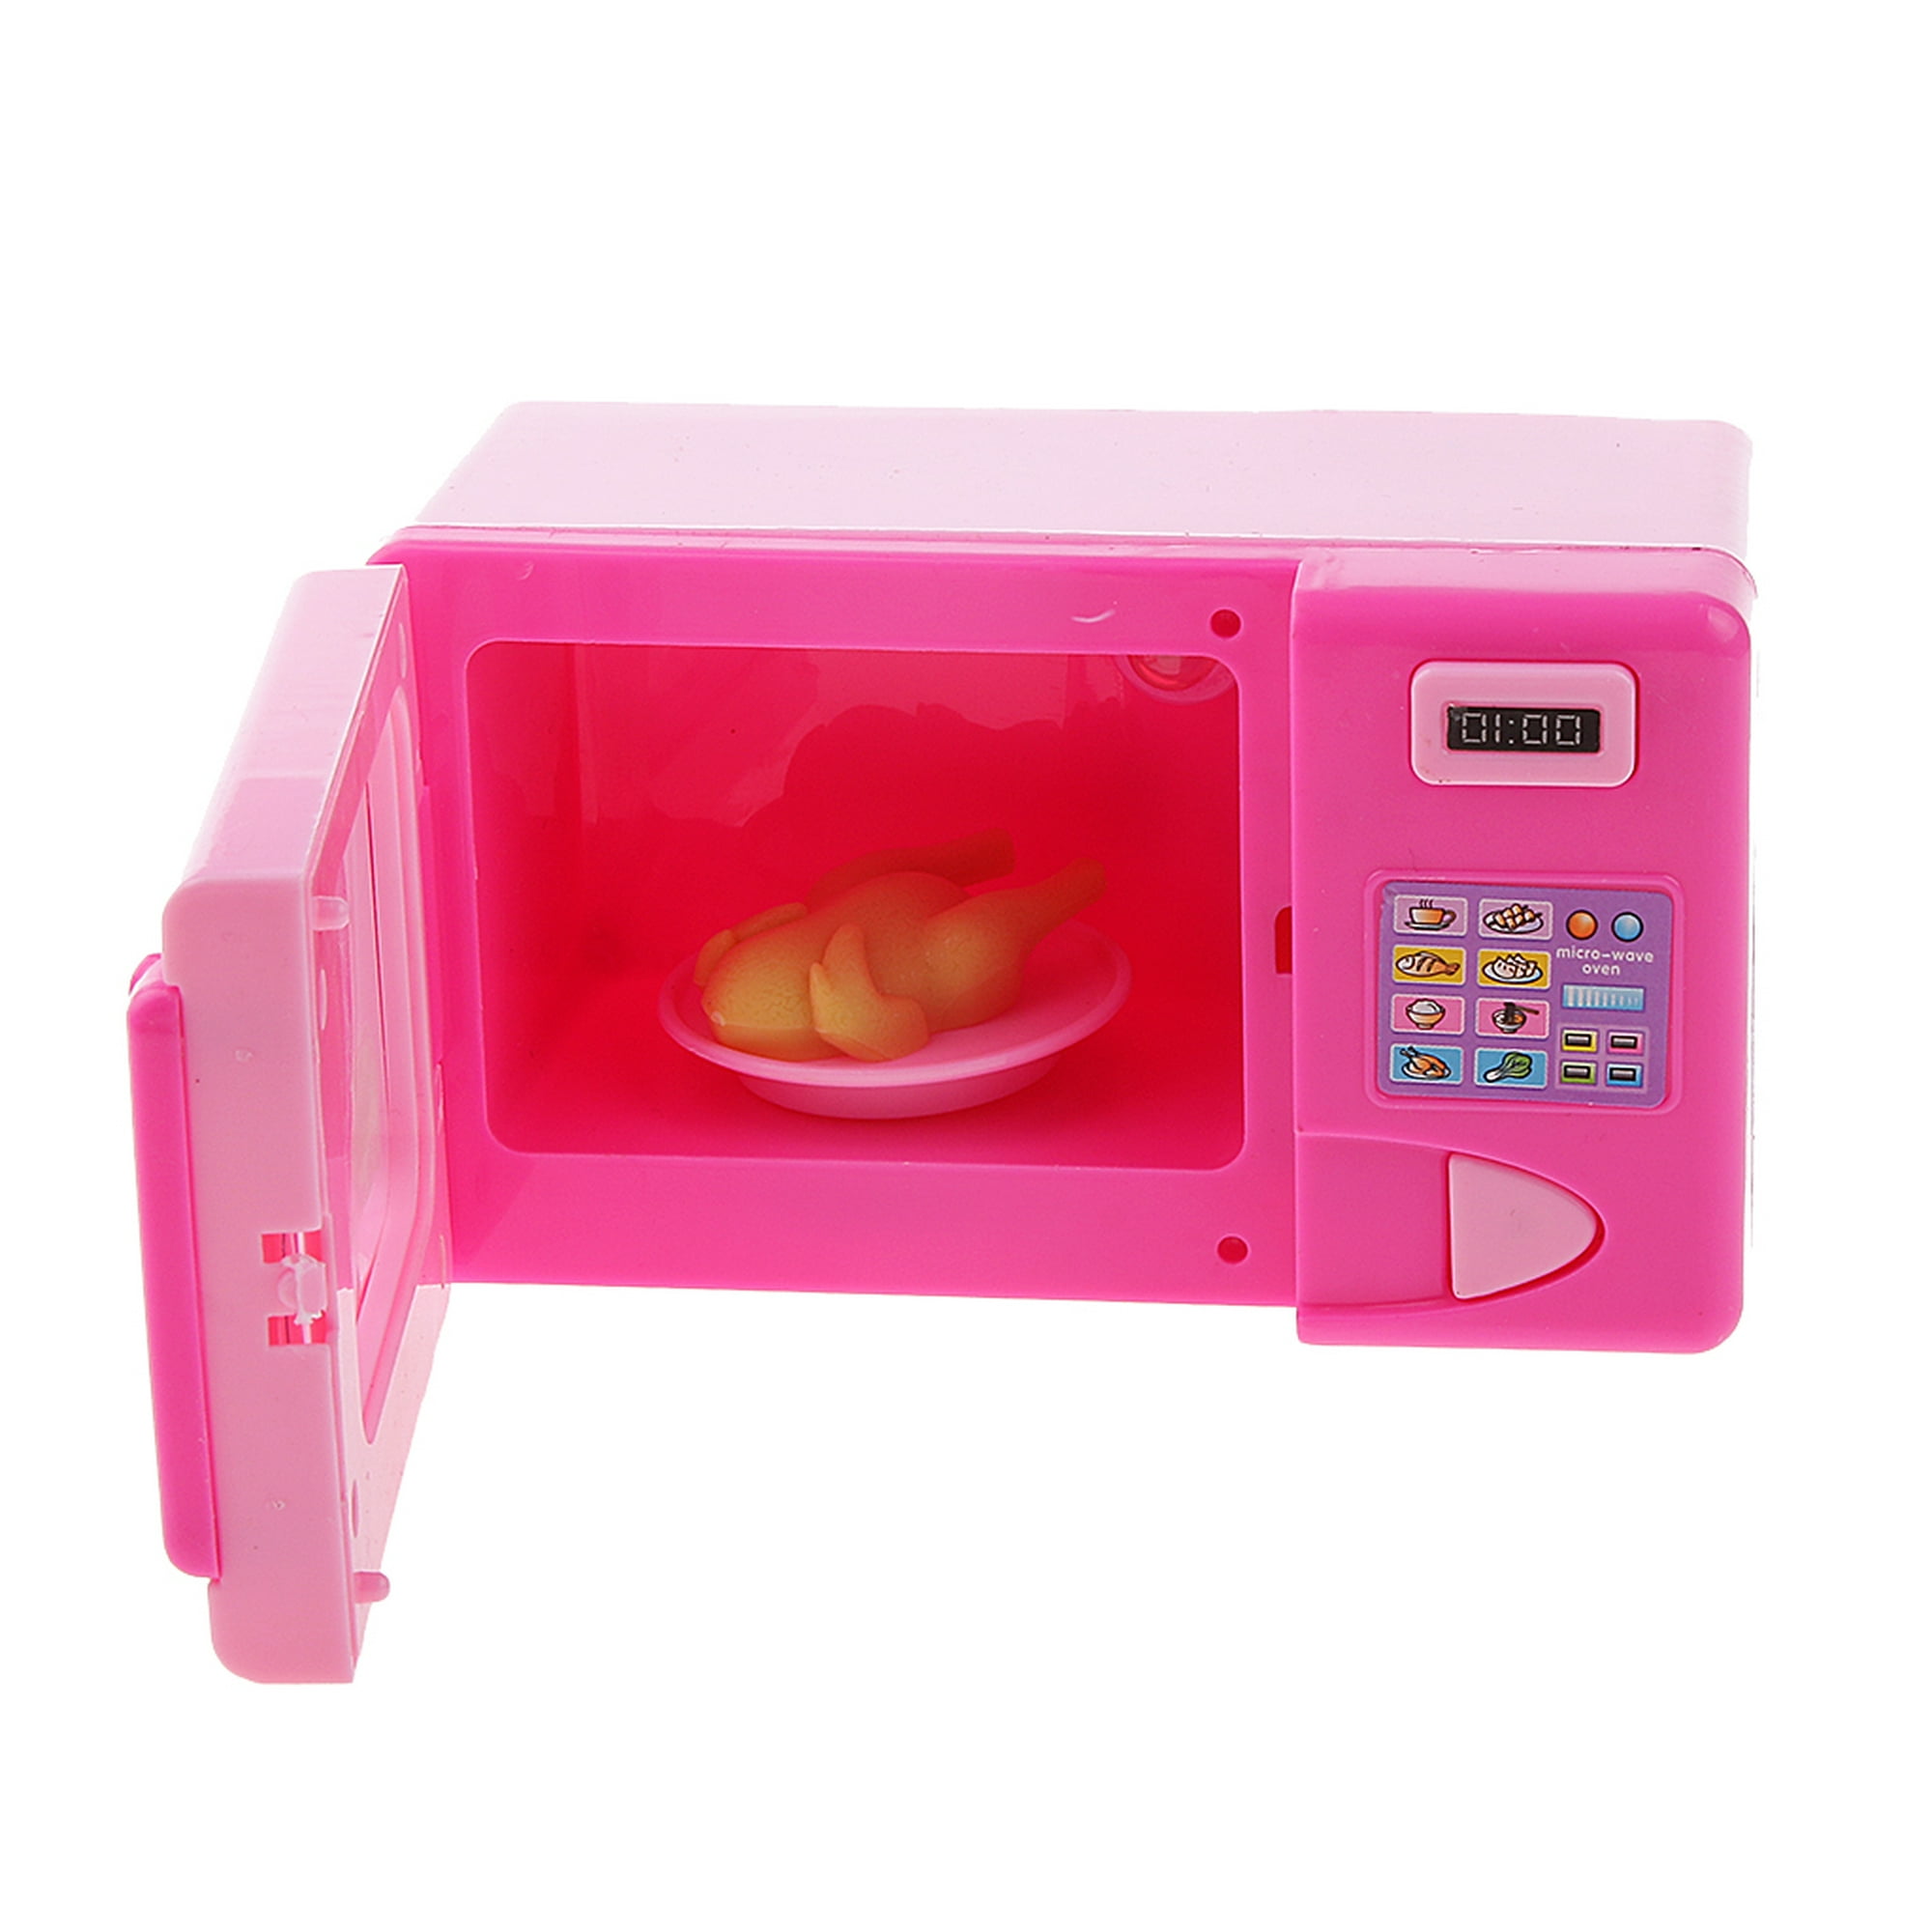 Horno microondas de juguete rosa para niños con luz y sonido Ref203